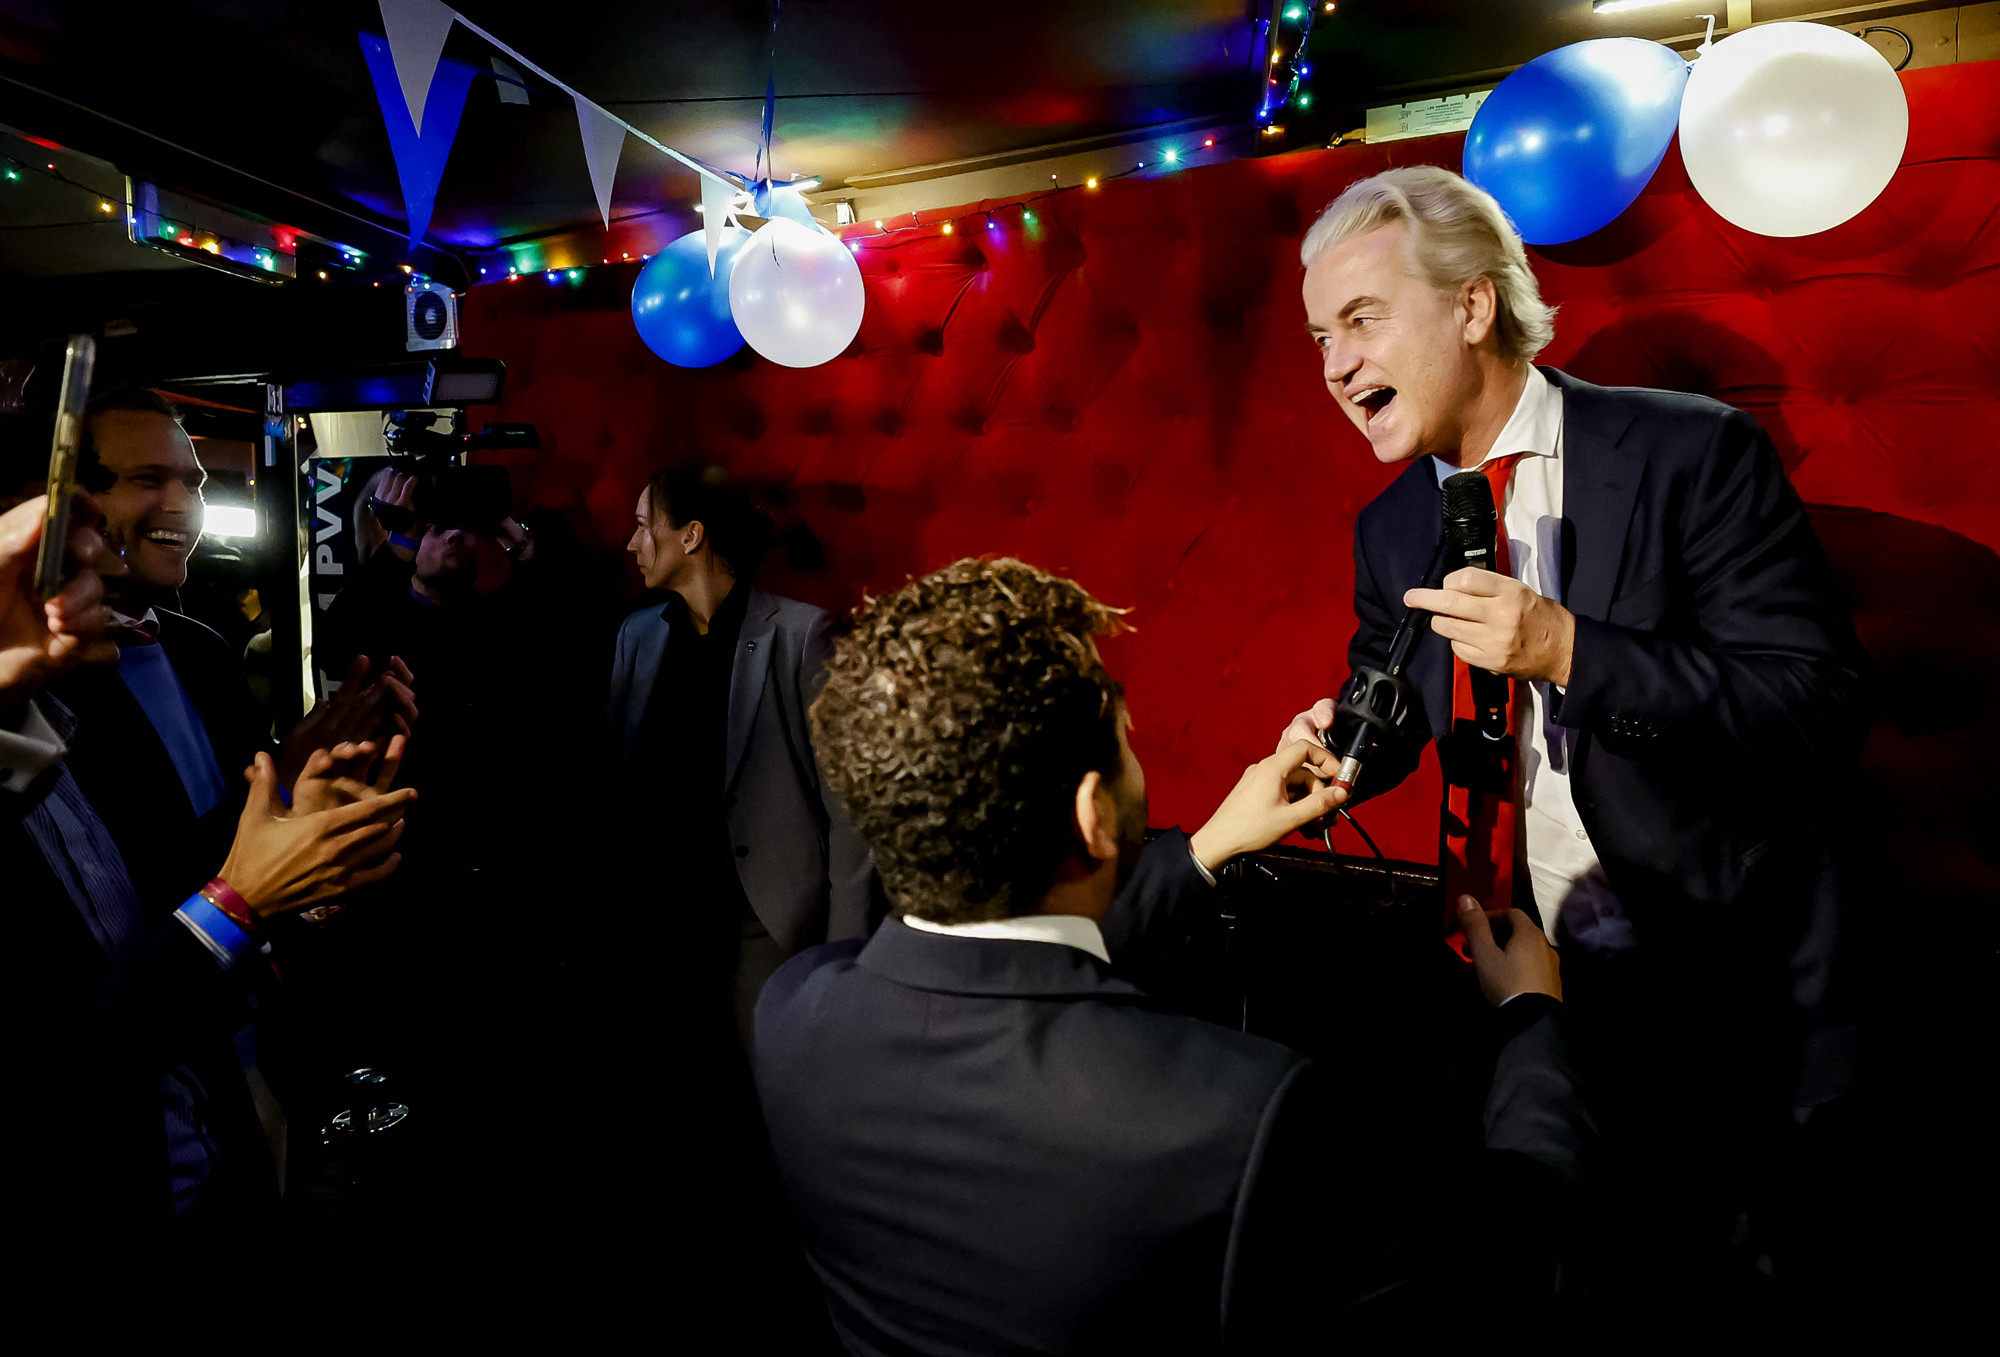 A szélsőjobboldali, Trump-frizurás, populista Wilders nyerte a holland választást